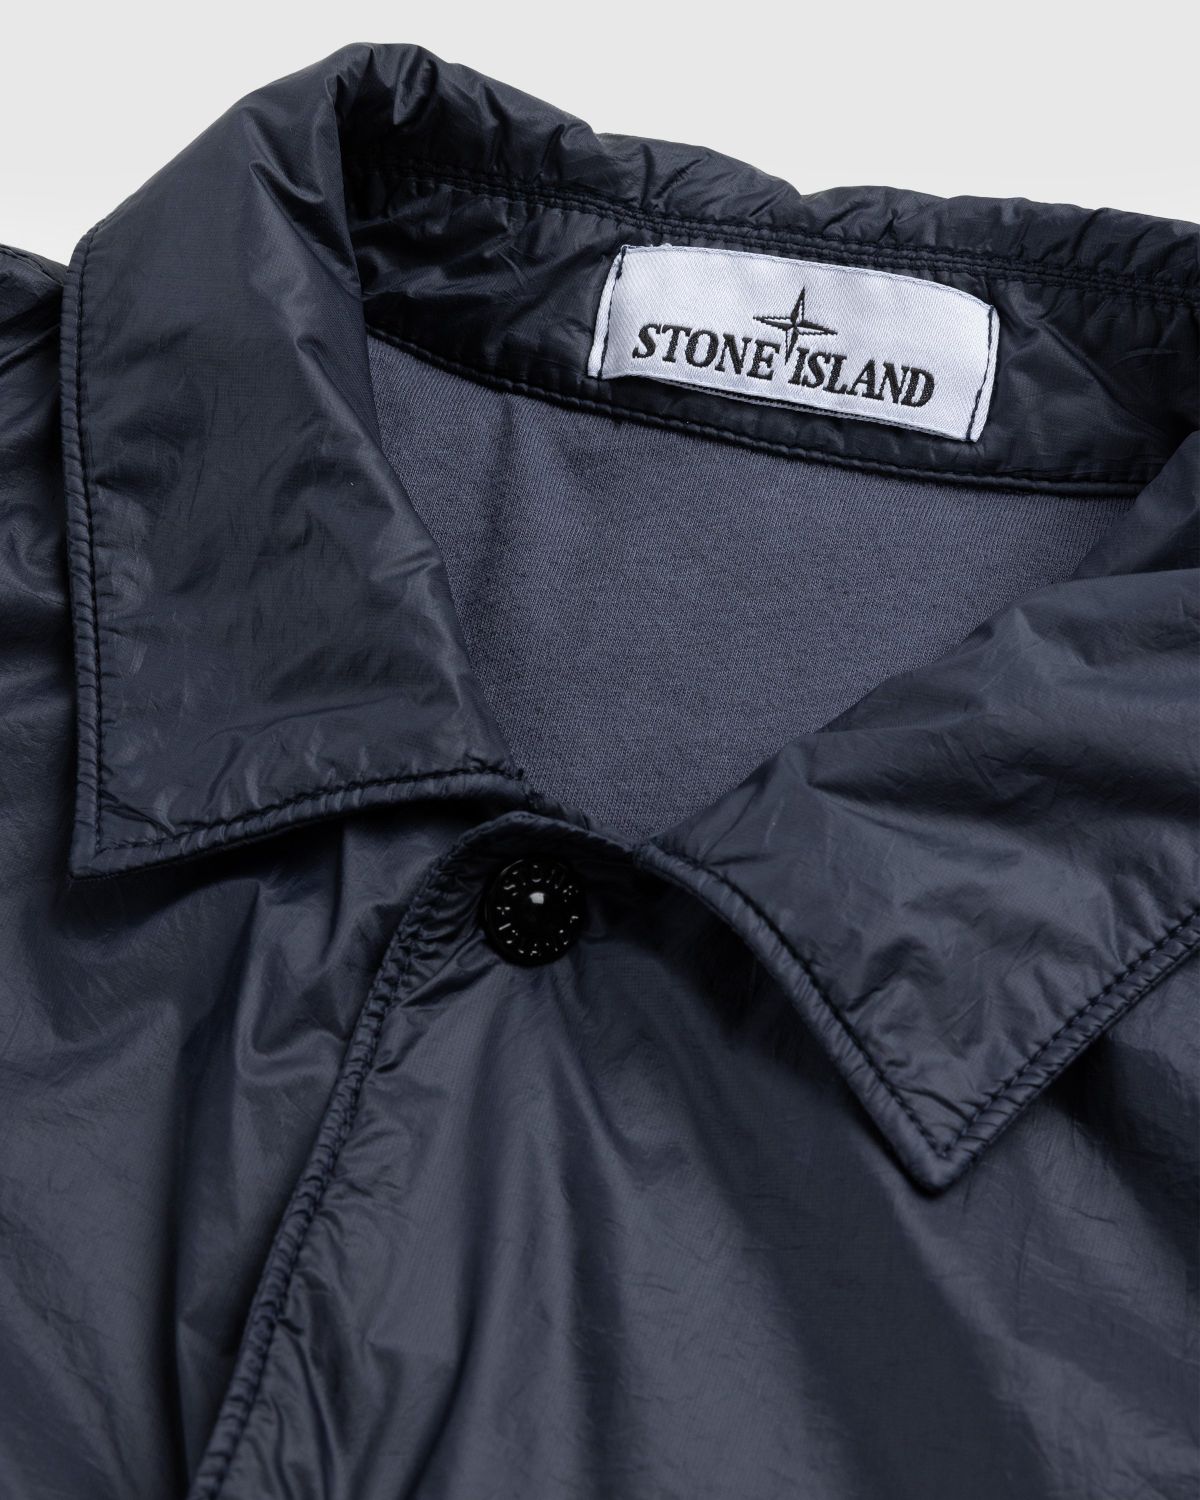 Stone Island – Overshirt Navy Blue 11025 - Shirts - Blue - Image 6